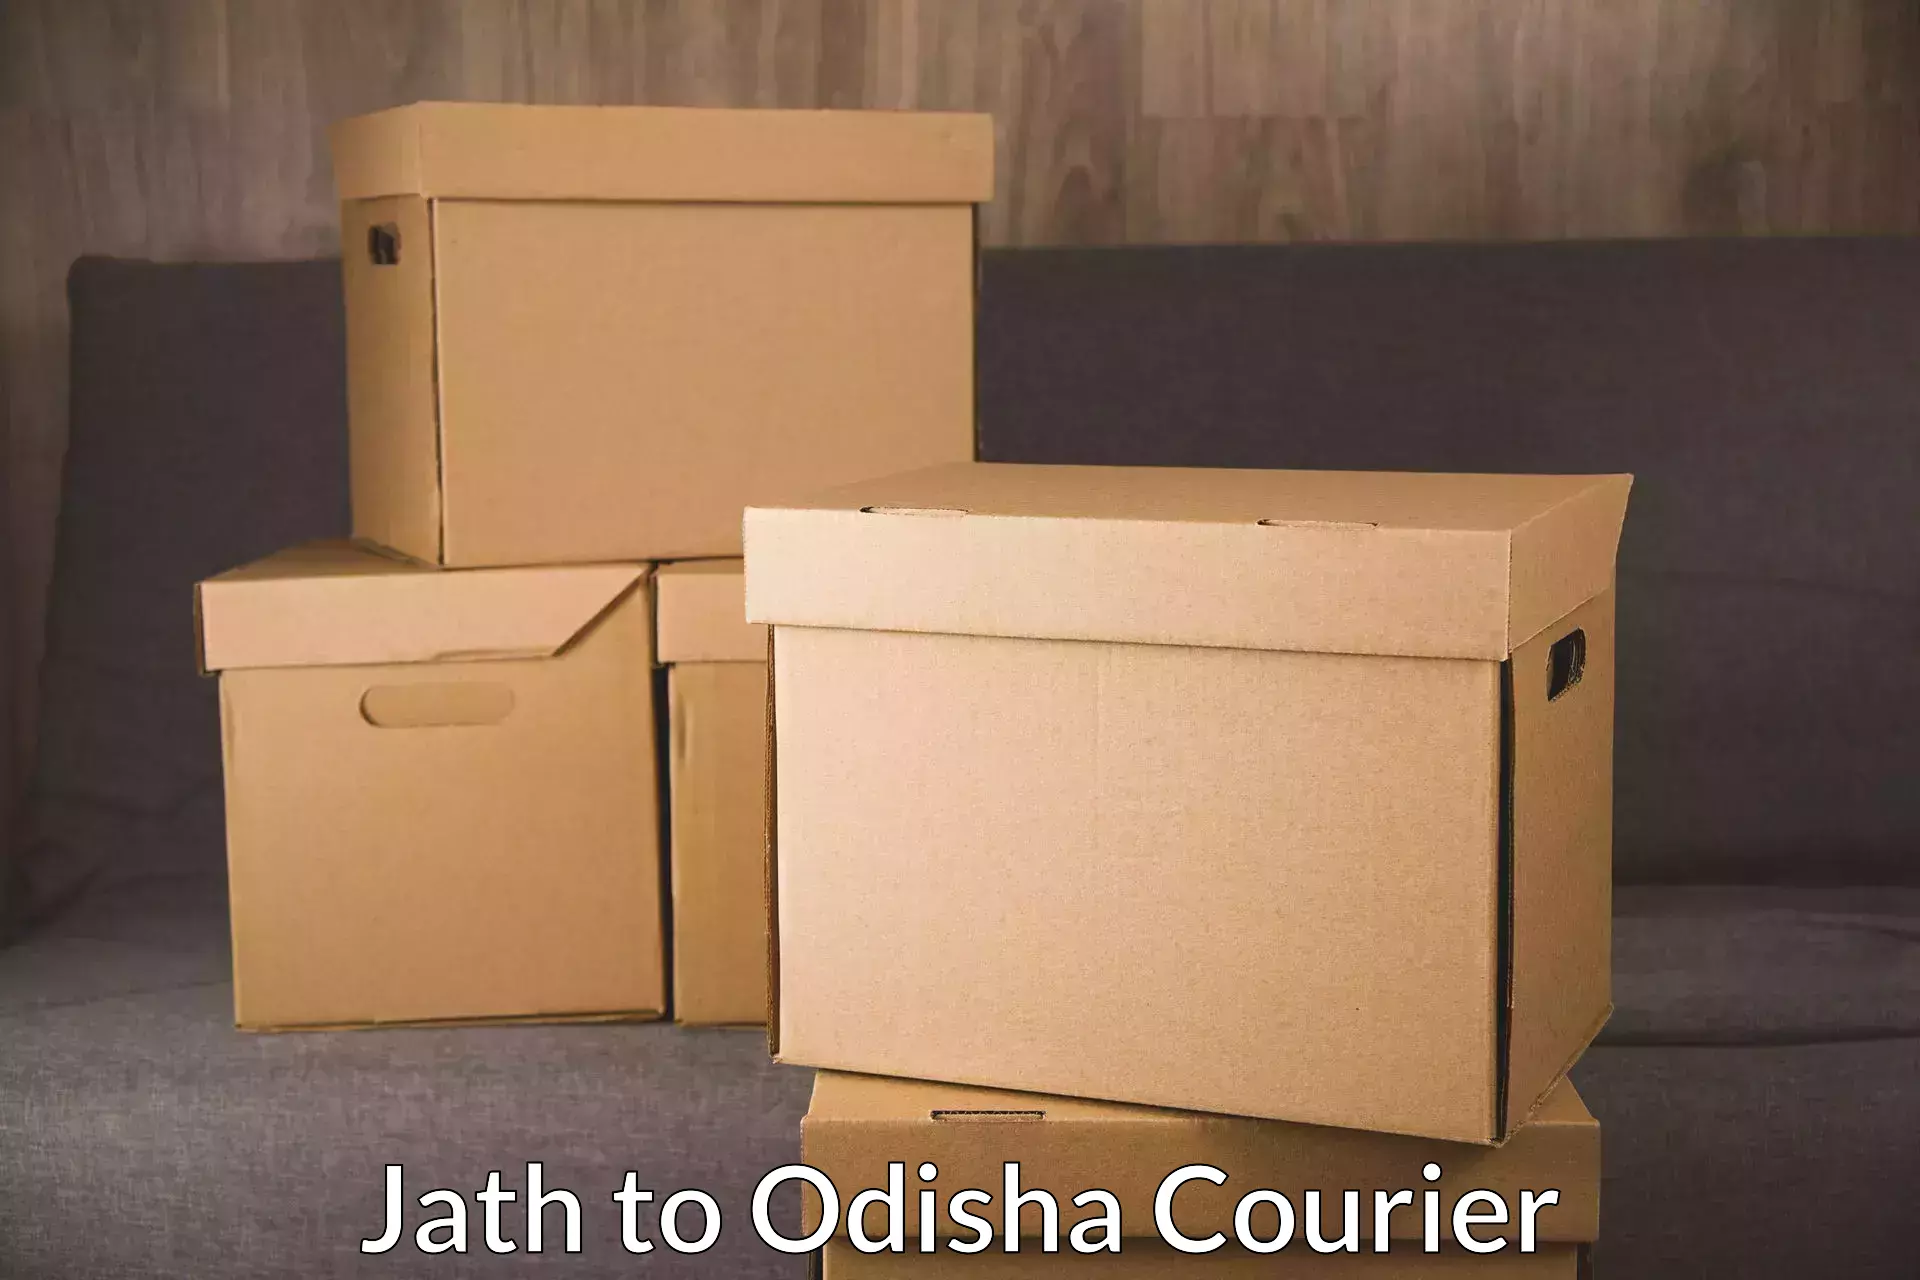 Customer-centric shipping Jath to Barkote